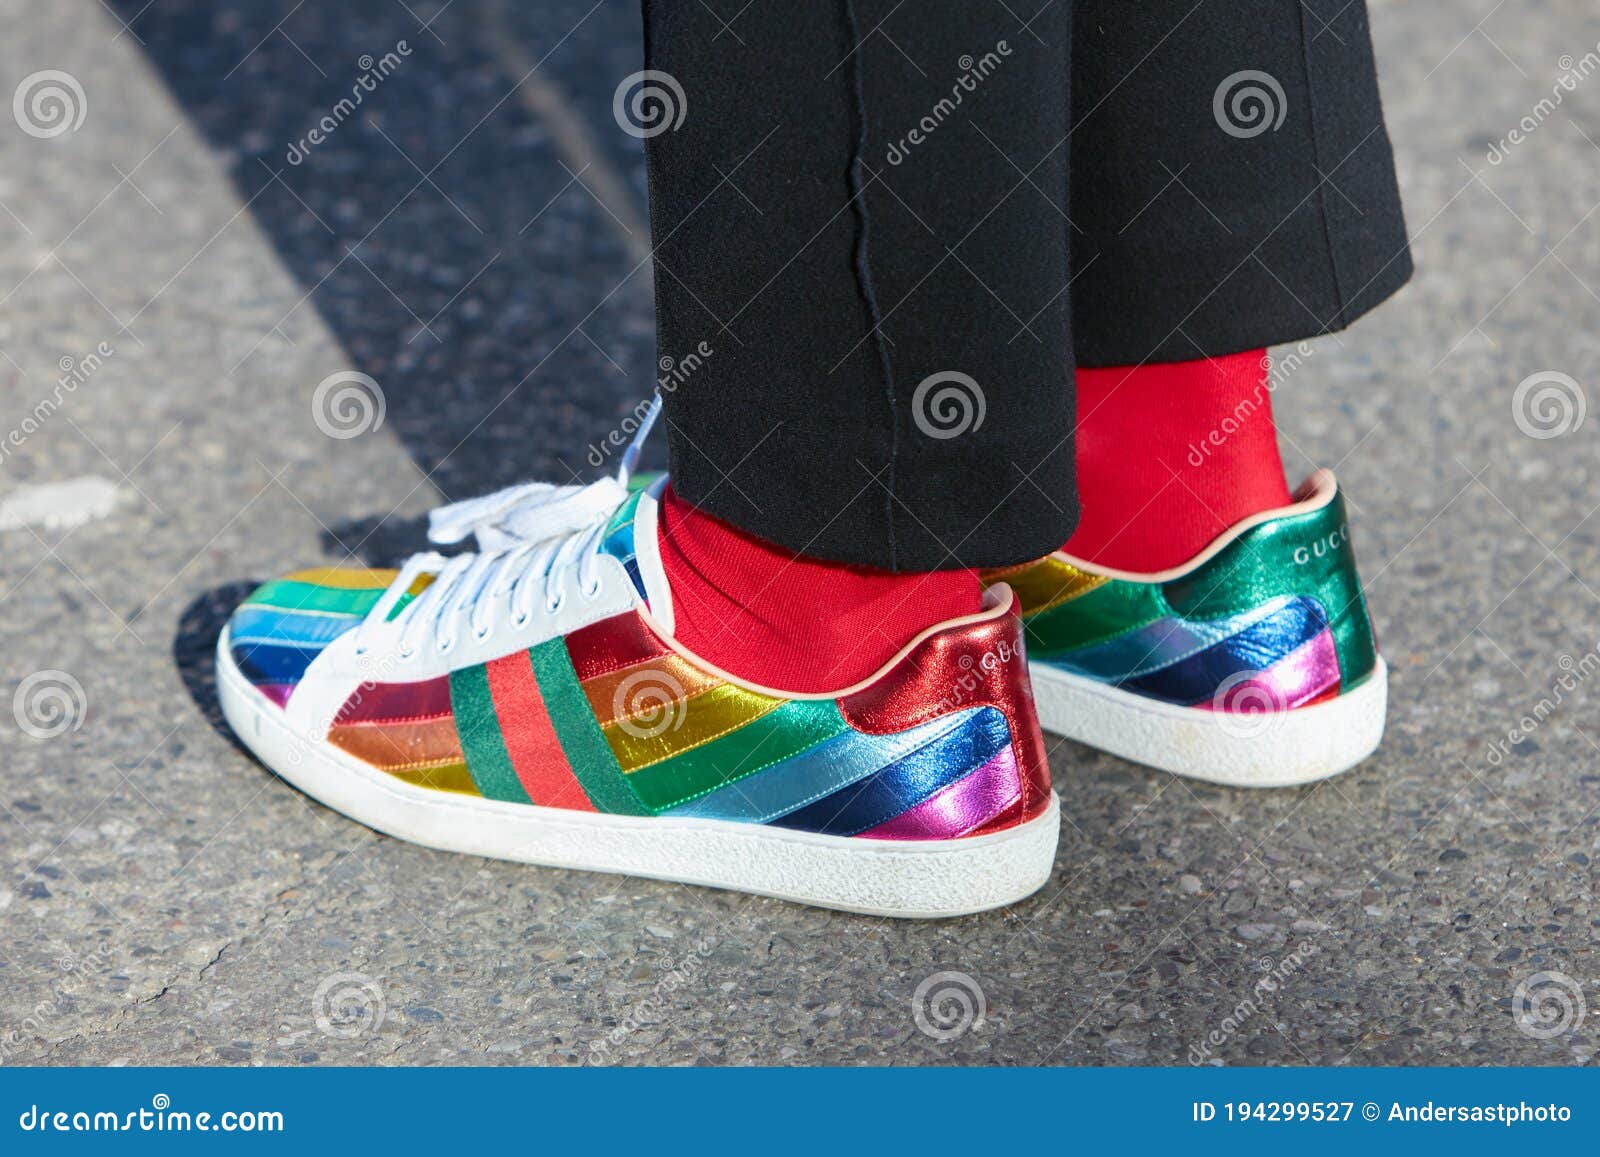 Mujer Con Colores Arcoiris Zapatillas Gucci Y Calcetines Rojos Antes De Emporio Armani editorial - Imagen de calle, equipo: